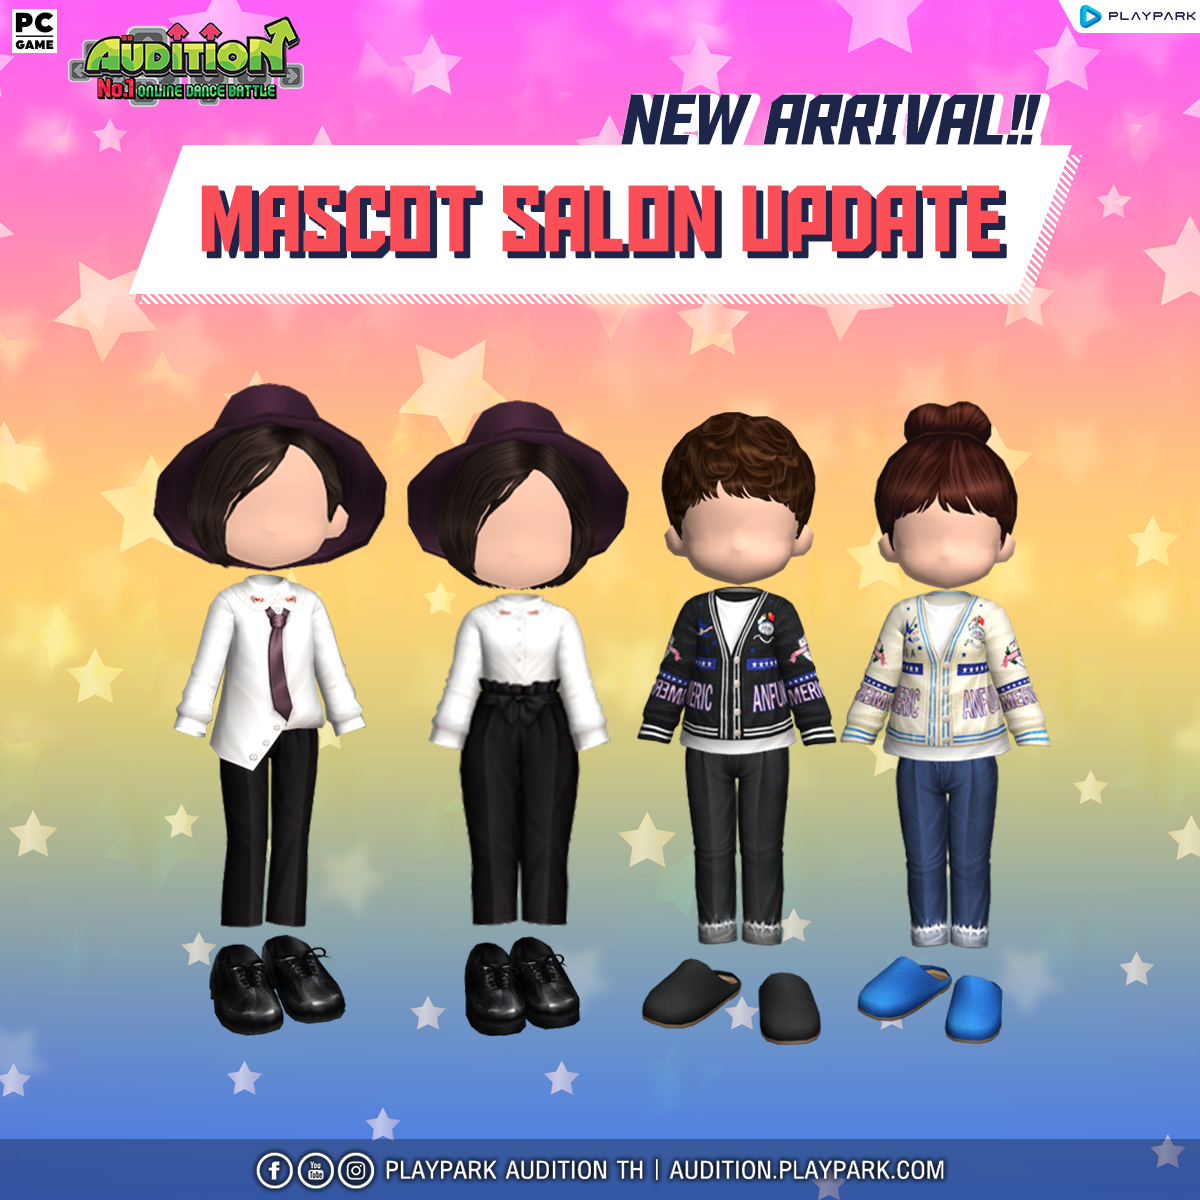 5 มกราคมนี้ Update เพลงใหม่ , Mascot Salon และไอเทมใหม่ !!  